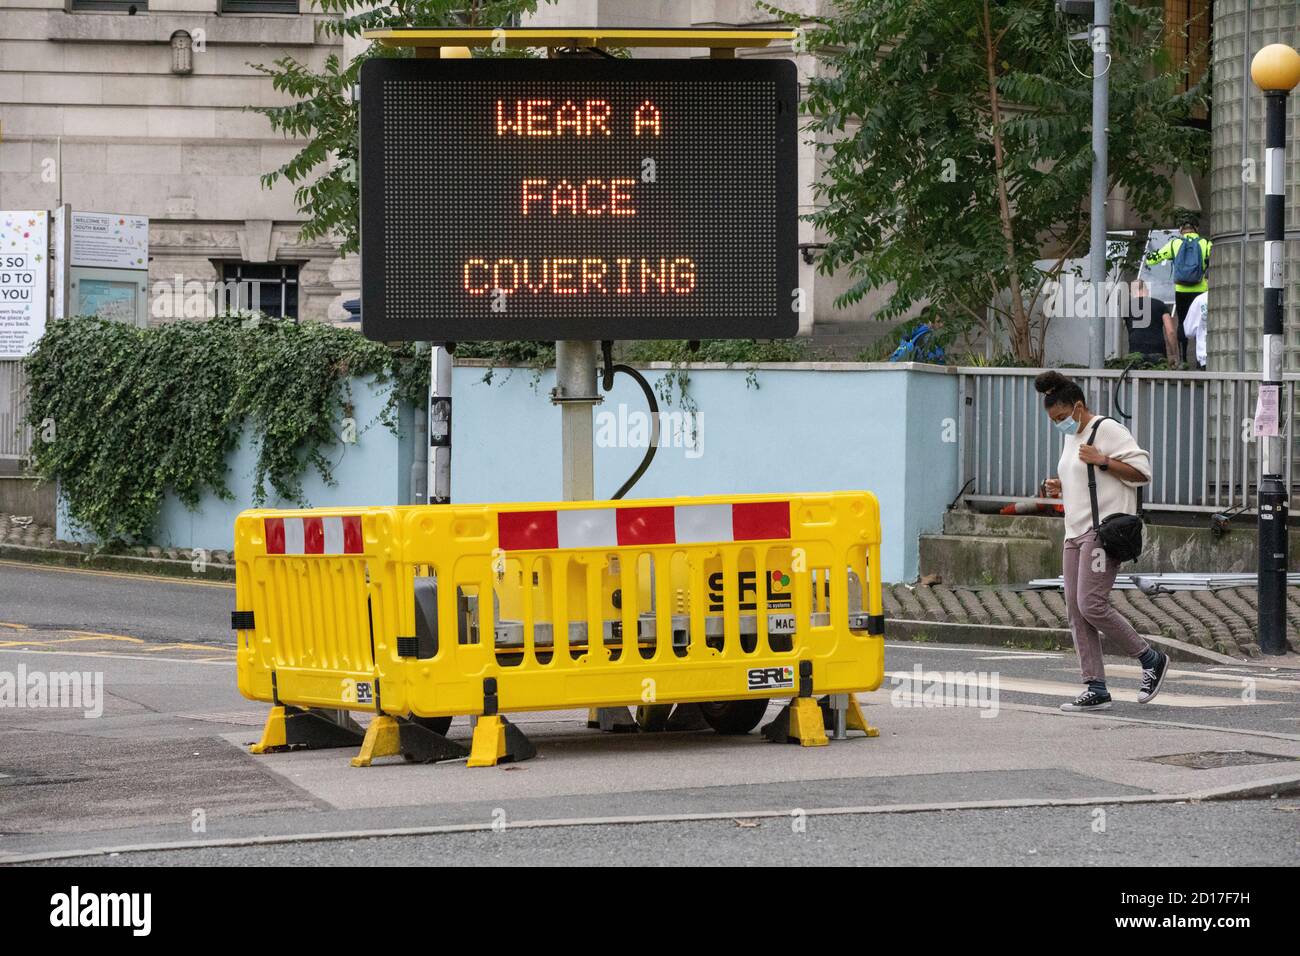 Panneau de recommandation « porter UN masque » indiquant aux navetteurs de porter un masque facial dans les transports en commun, Waterloo Station, Londres, Angleterre, Royaume-Uni Banque D'Images